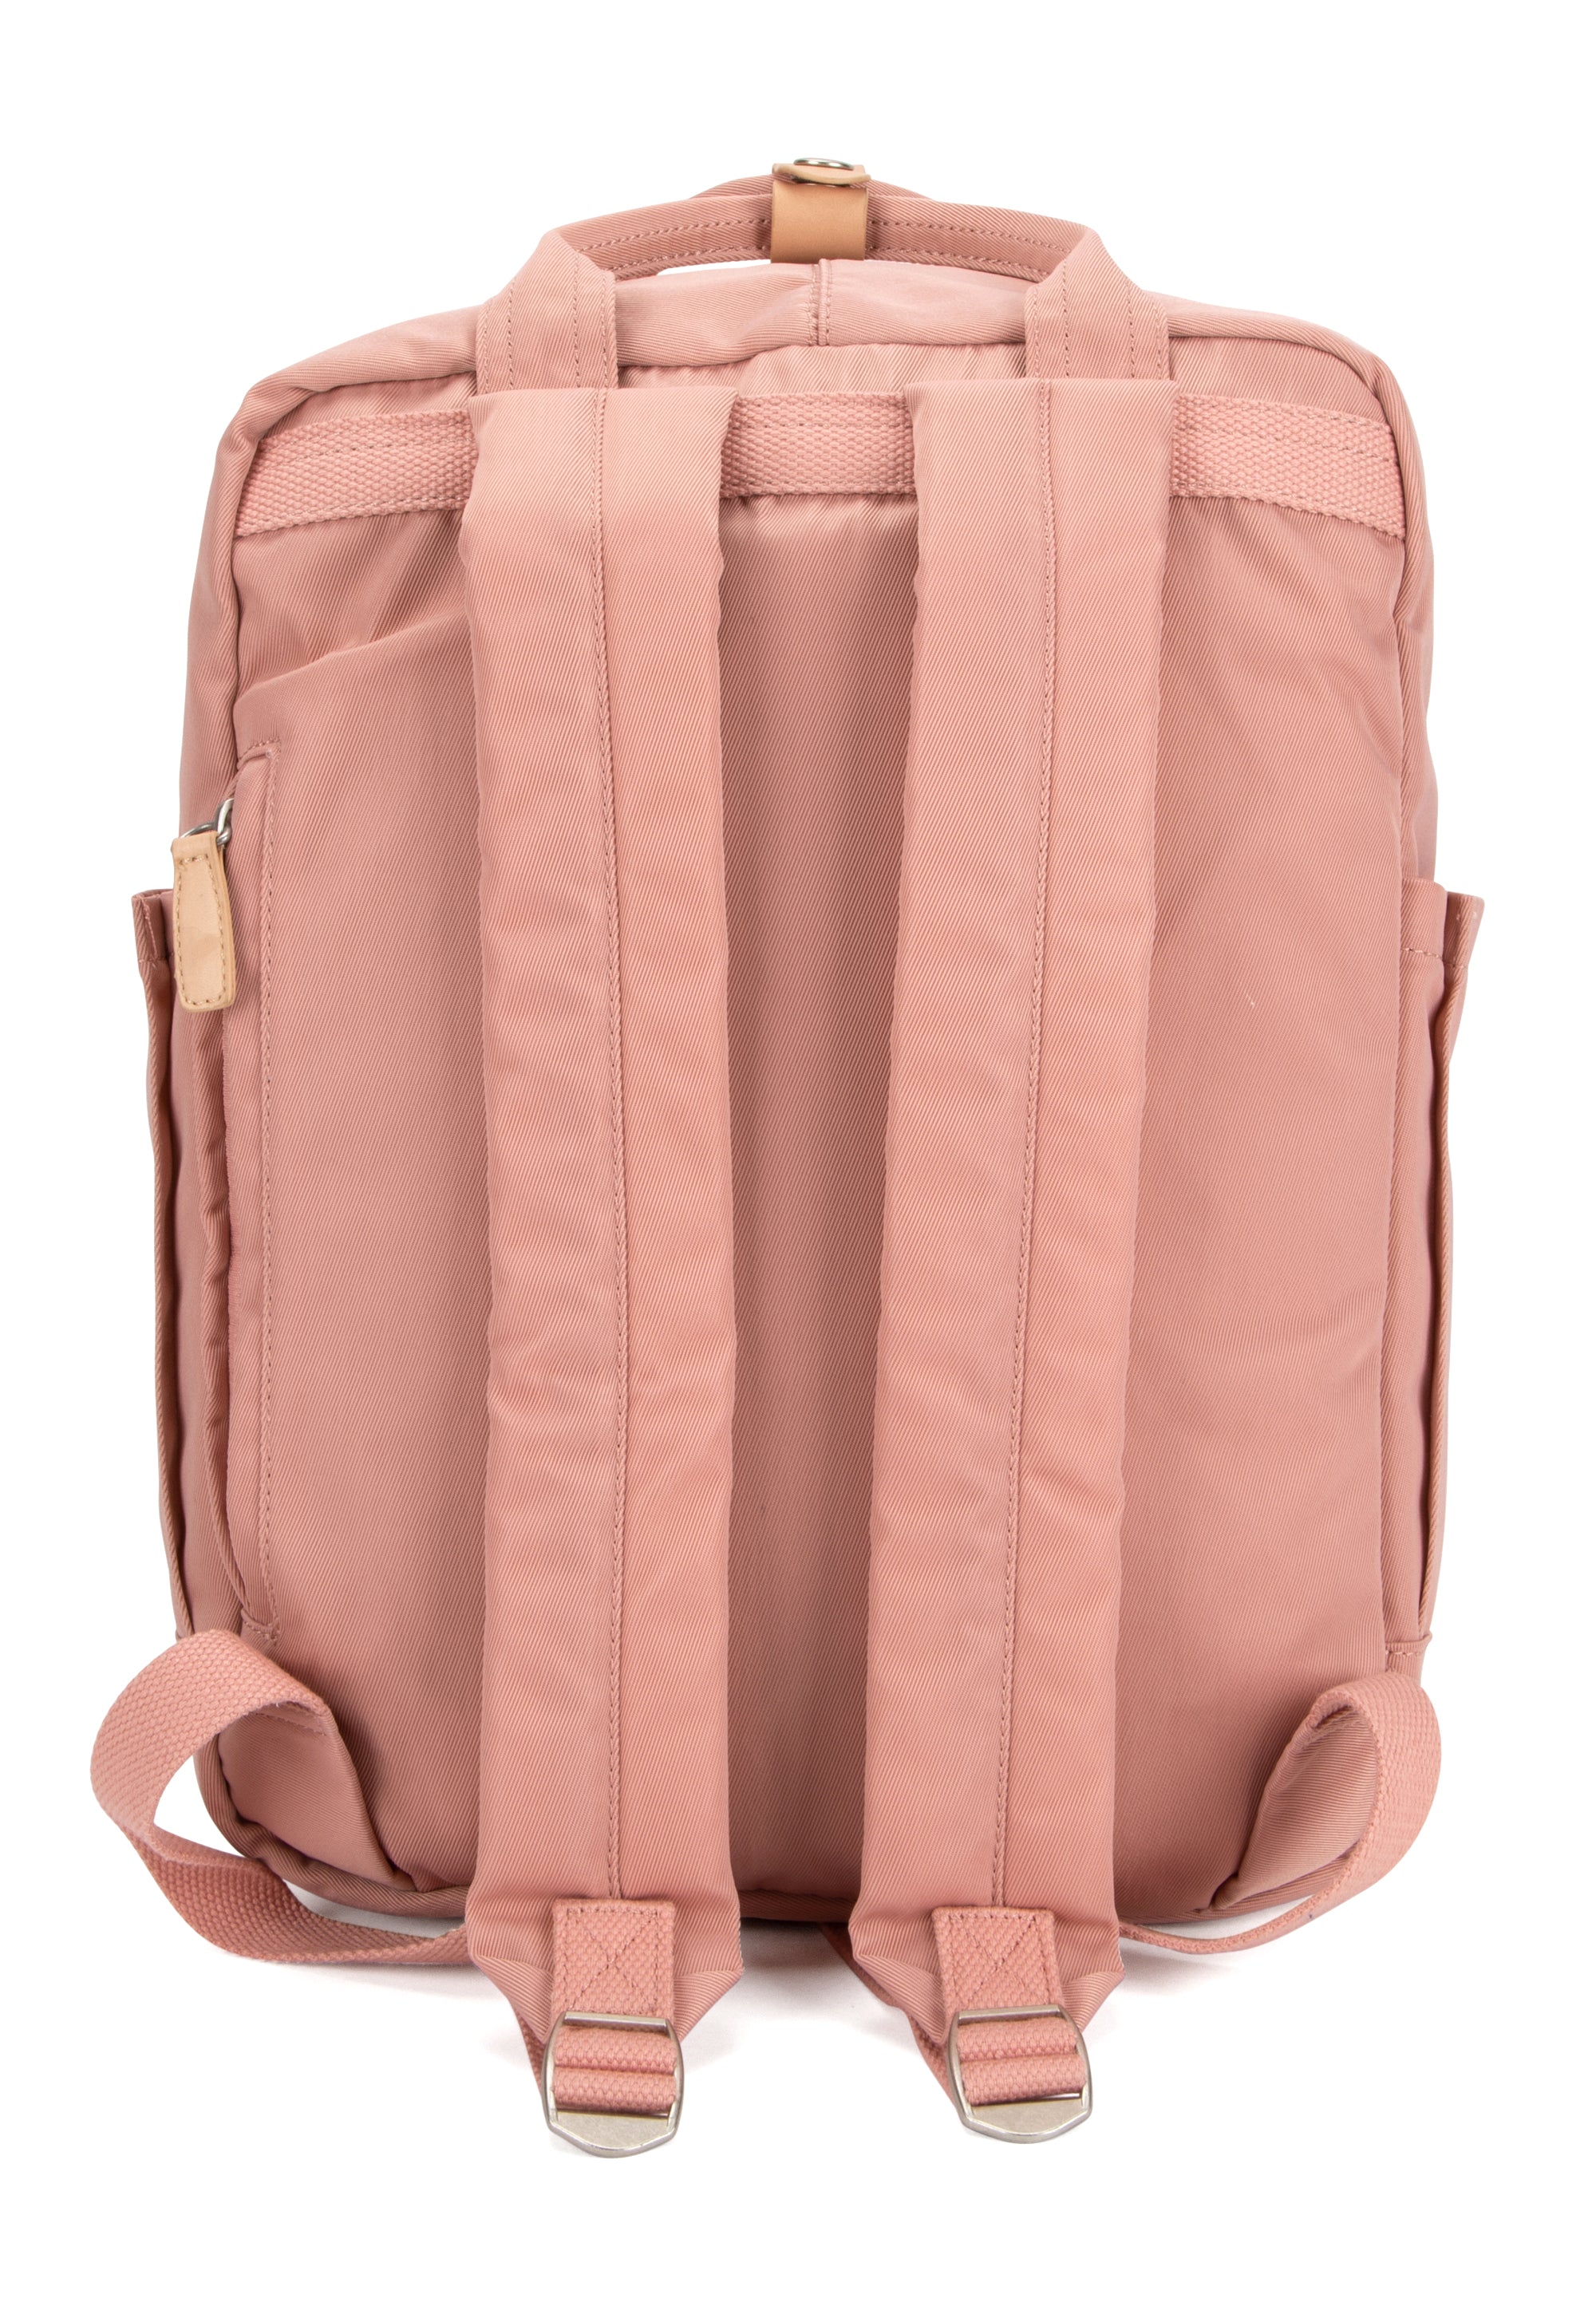 Wimbledon Backpack - Pink - Seventeen London